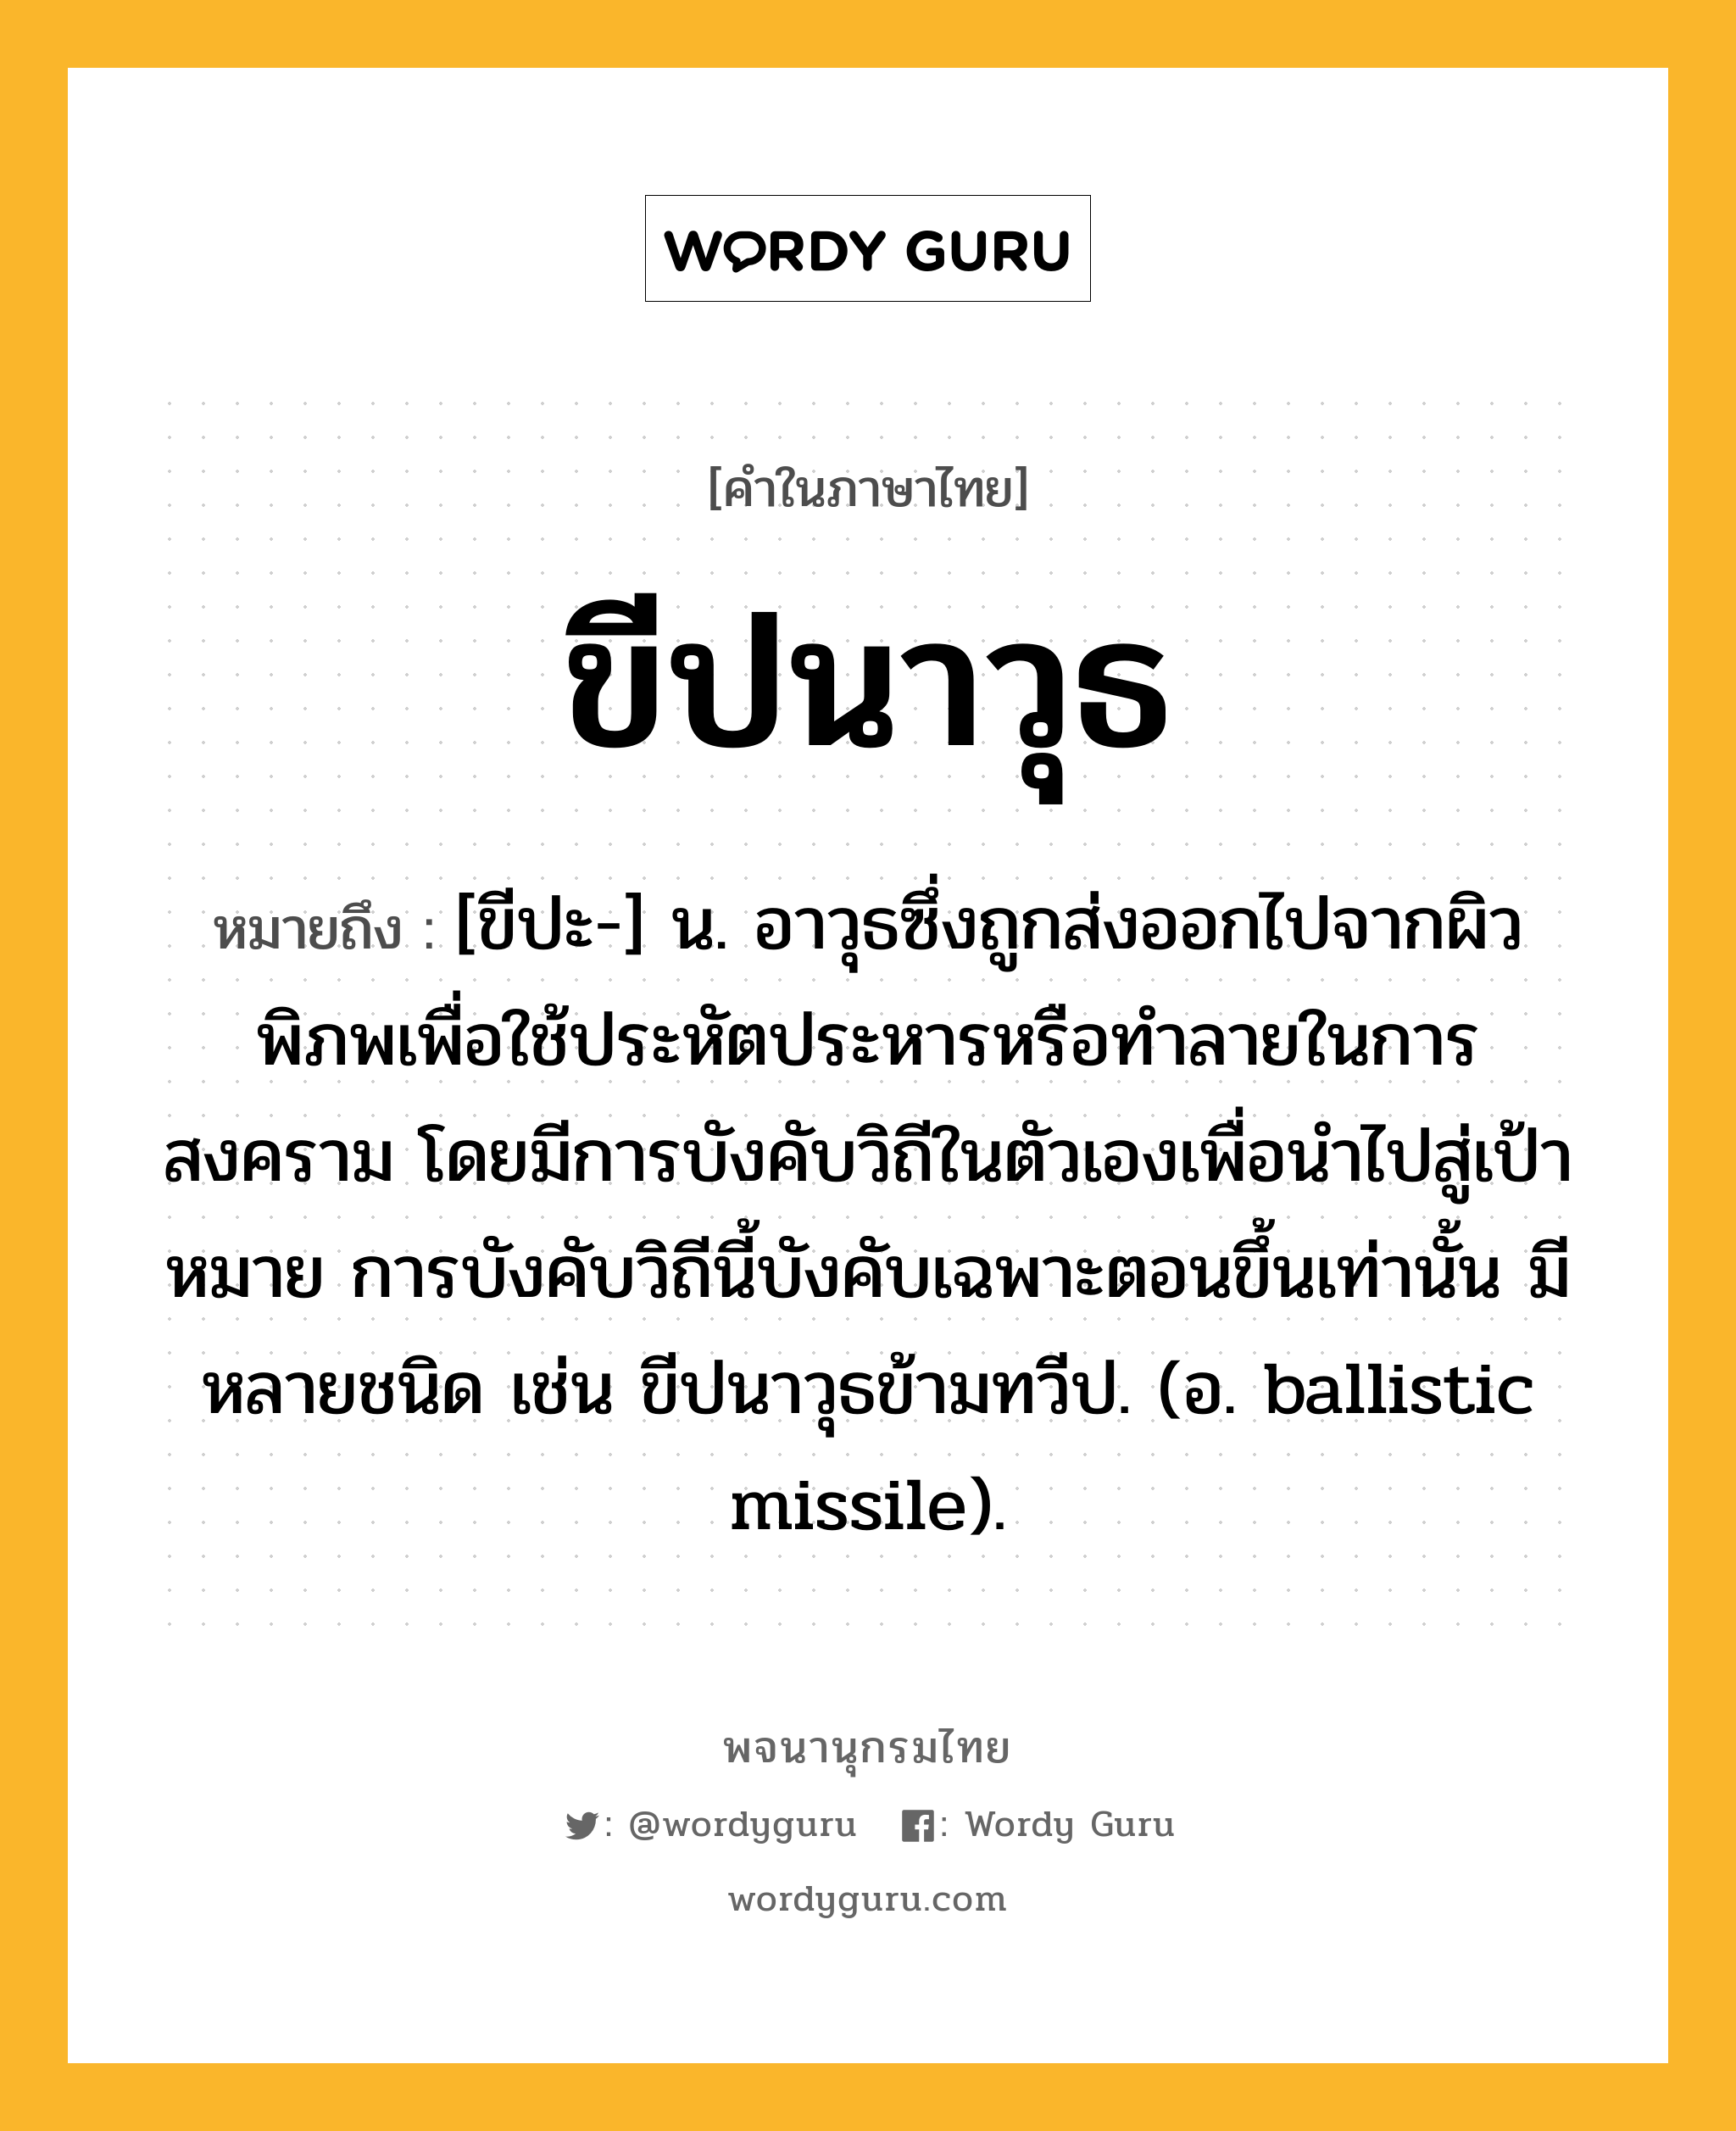 ขีปนาวุธ ความหมาย หมายถึงอะไร?, คำในภาษาไทย ขีปนาวุธ หมายถึง [ขีปะ-] น. อาวุธซึ่งถูกส่งออกไปจากผิวพิภพเพื่อใช้ประหัตประหารหรือทําลายในการสงคราม โดยมีการบังคับวิถีในตัวเองเพื่อนําไปสู่เป้าหมาย การบังคับวิถีนี้บังคับเฉพาะตอนขึ้นเท่านั้น มีหลายชนิด เช่น ขีปนาวุธข้ามทวีป. (อ. ballistic missile).